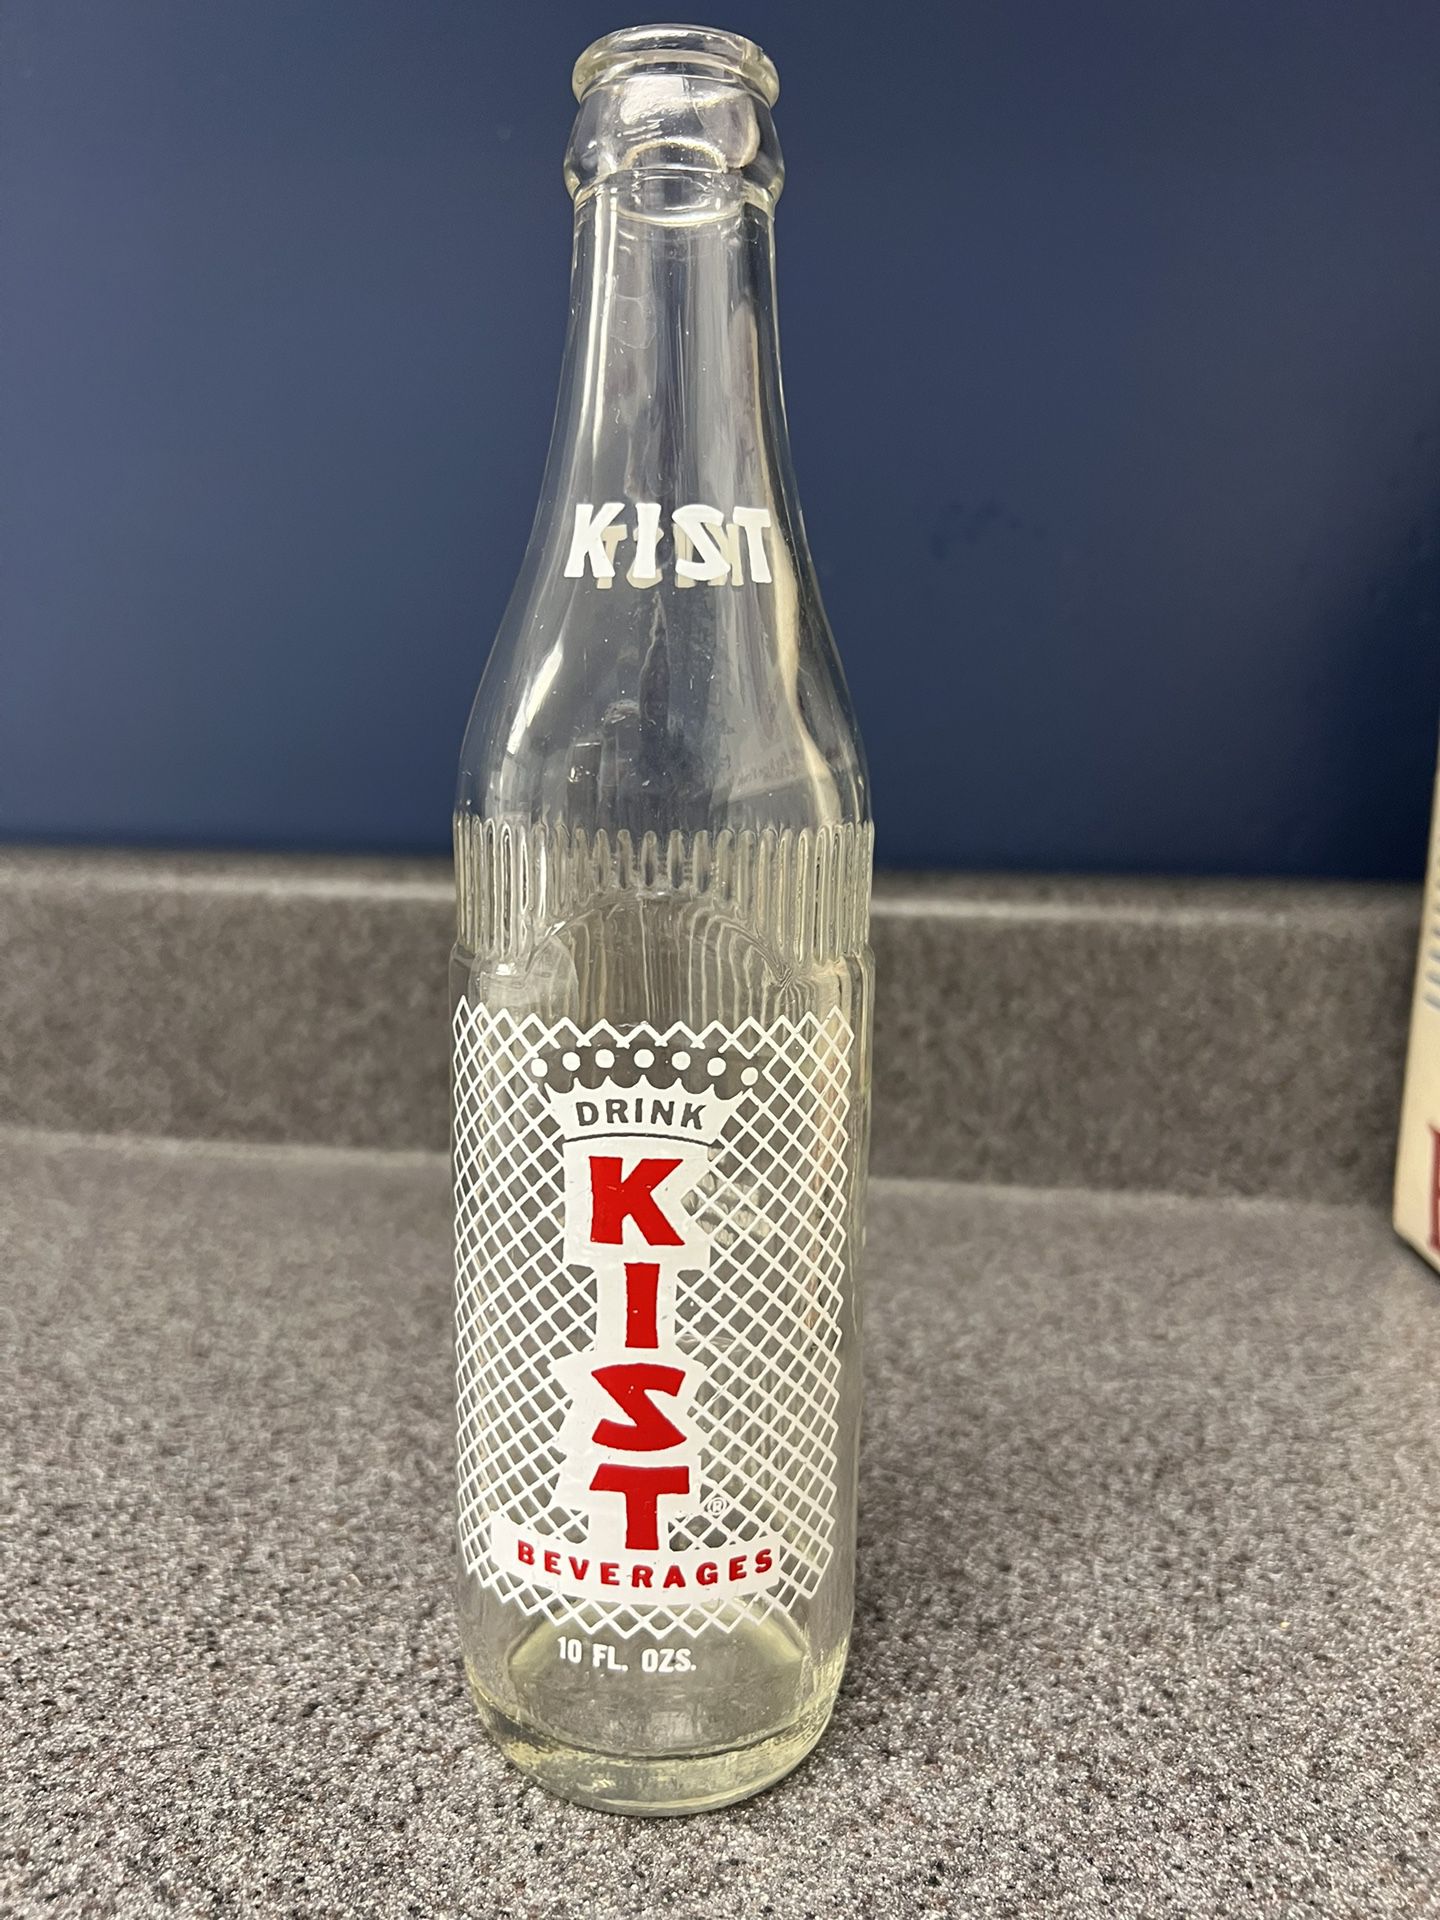 Vintage KIST Soda Bottle